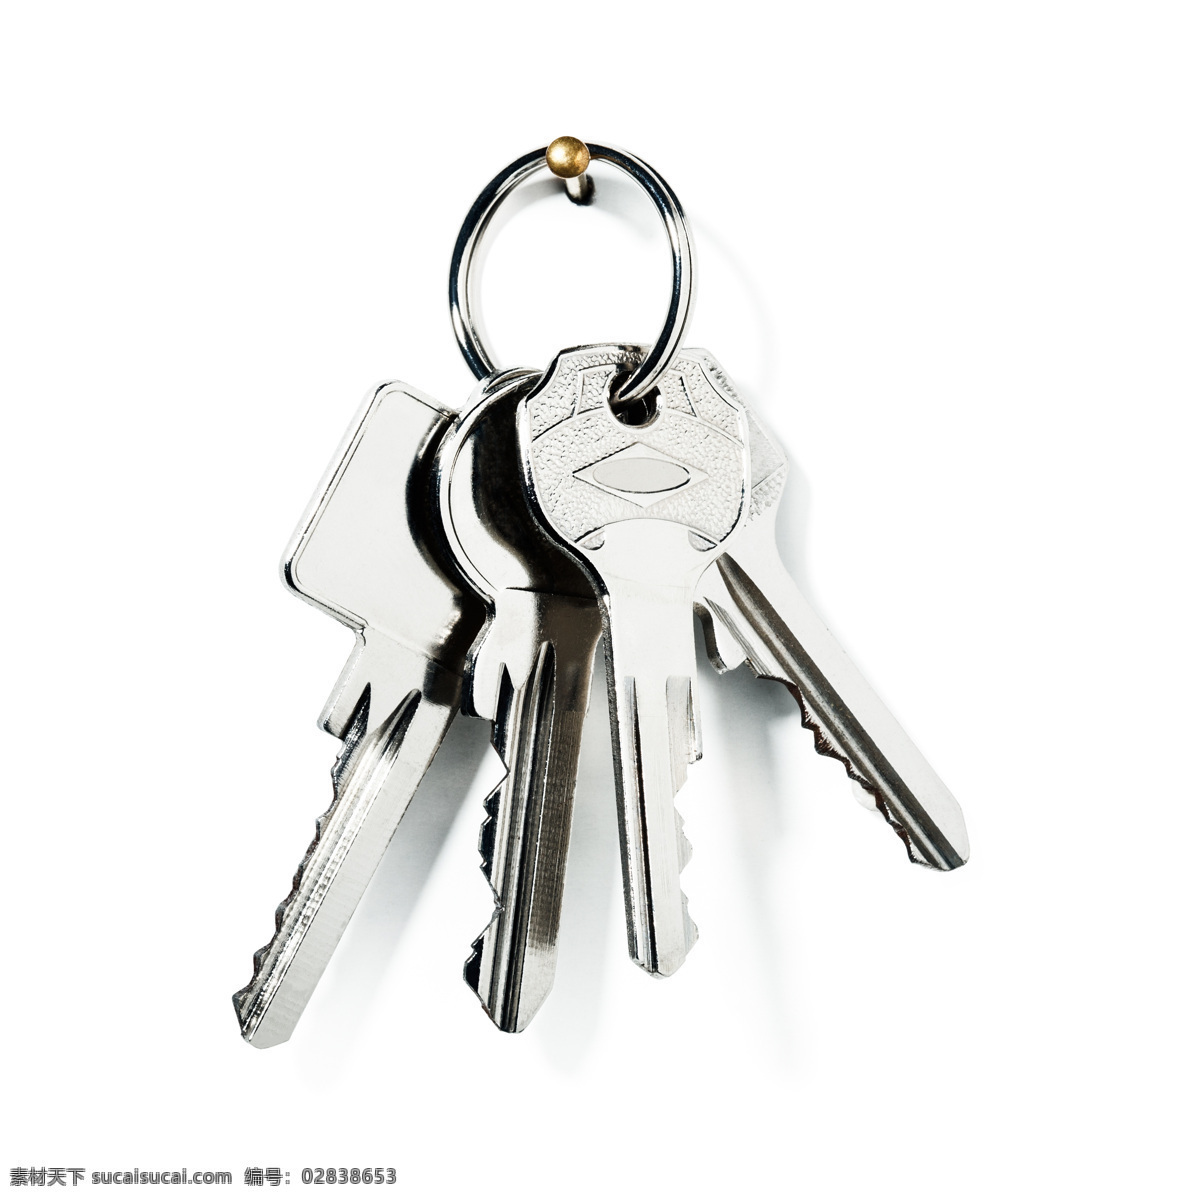 一串钥匙 普通钥匙 锁匙 钥匙扣 房子 新房钥匙 开锁工具 其他类别 生活百科 白色